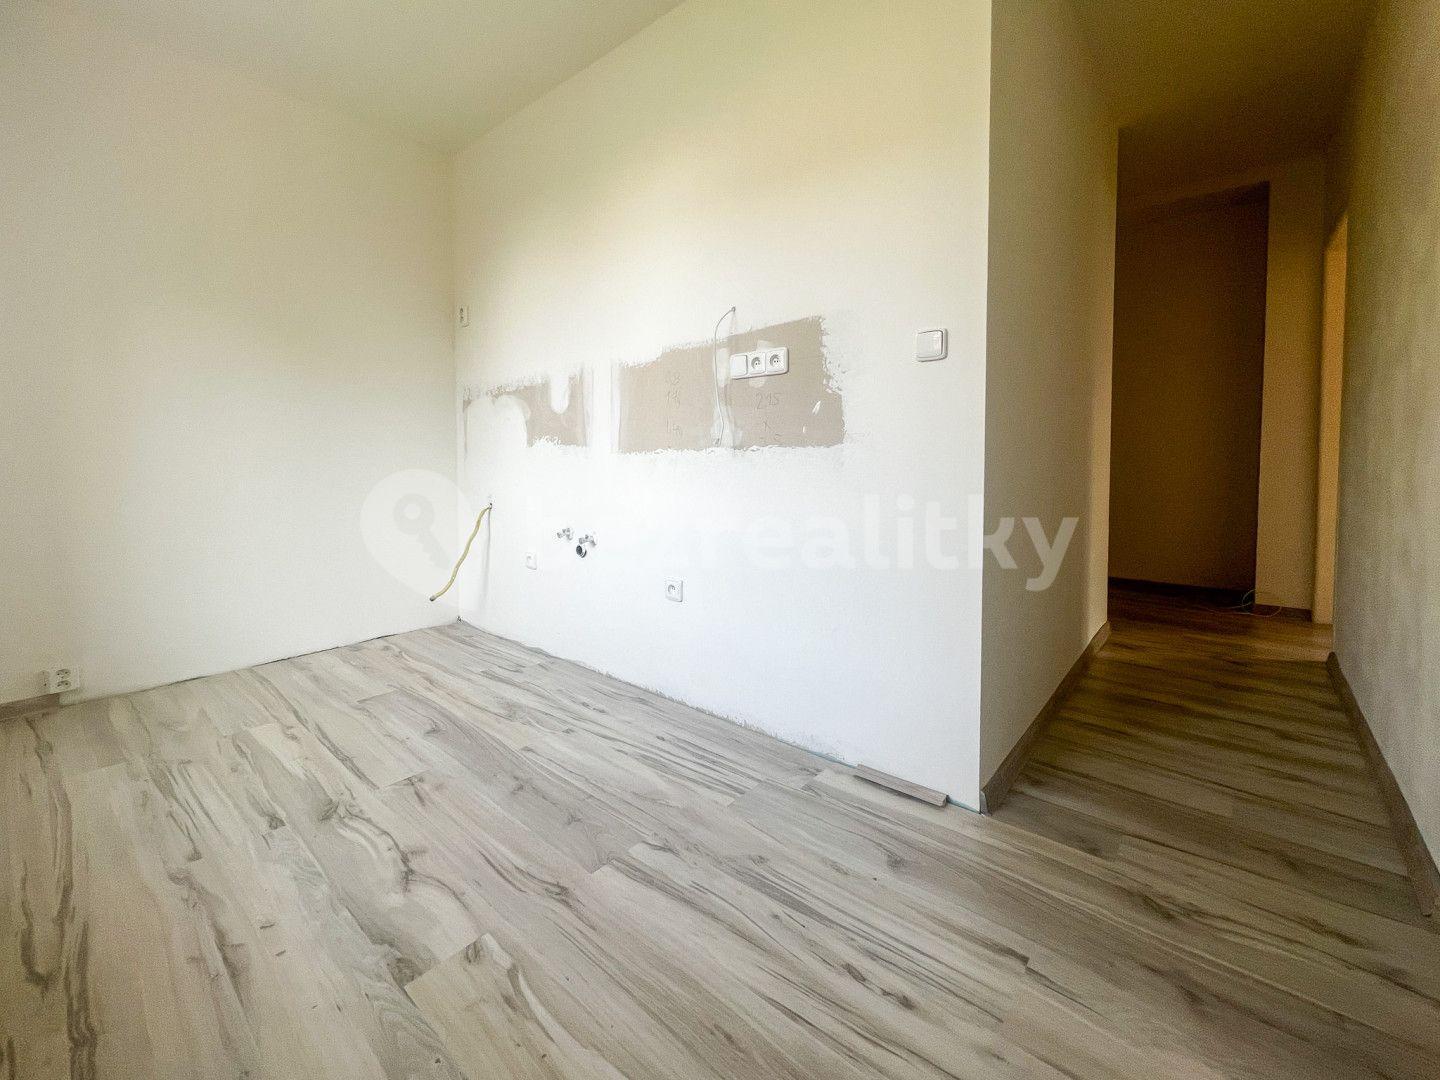 1 bedroom with open-plan kitchen flat for sale, 60 m², Wolkerova, Lovosice, Ústecký Region